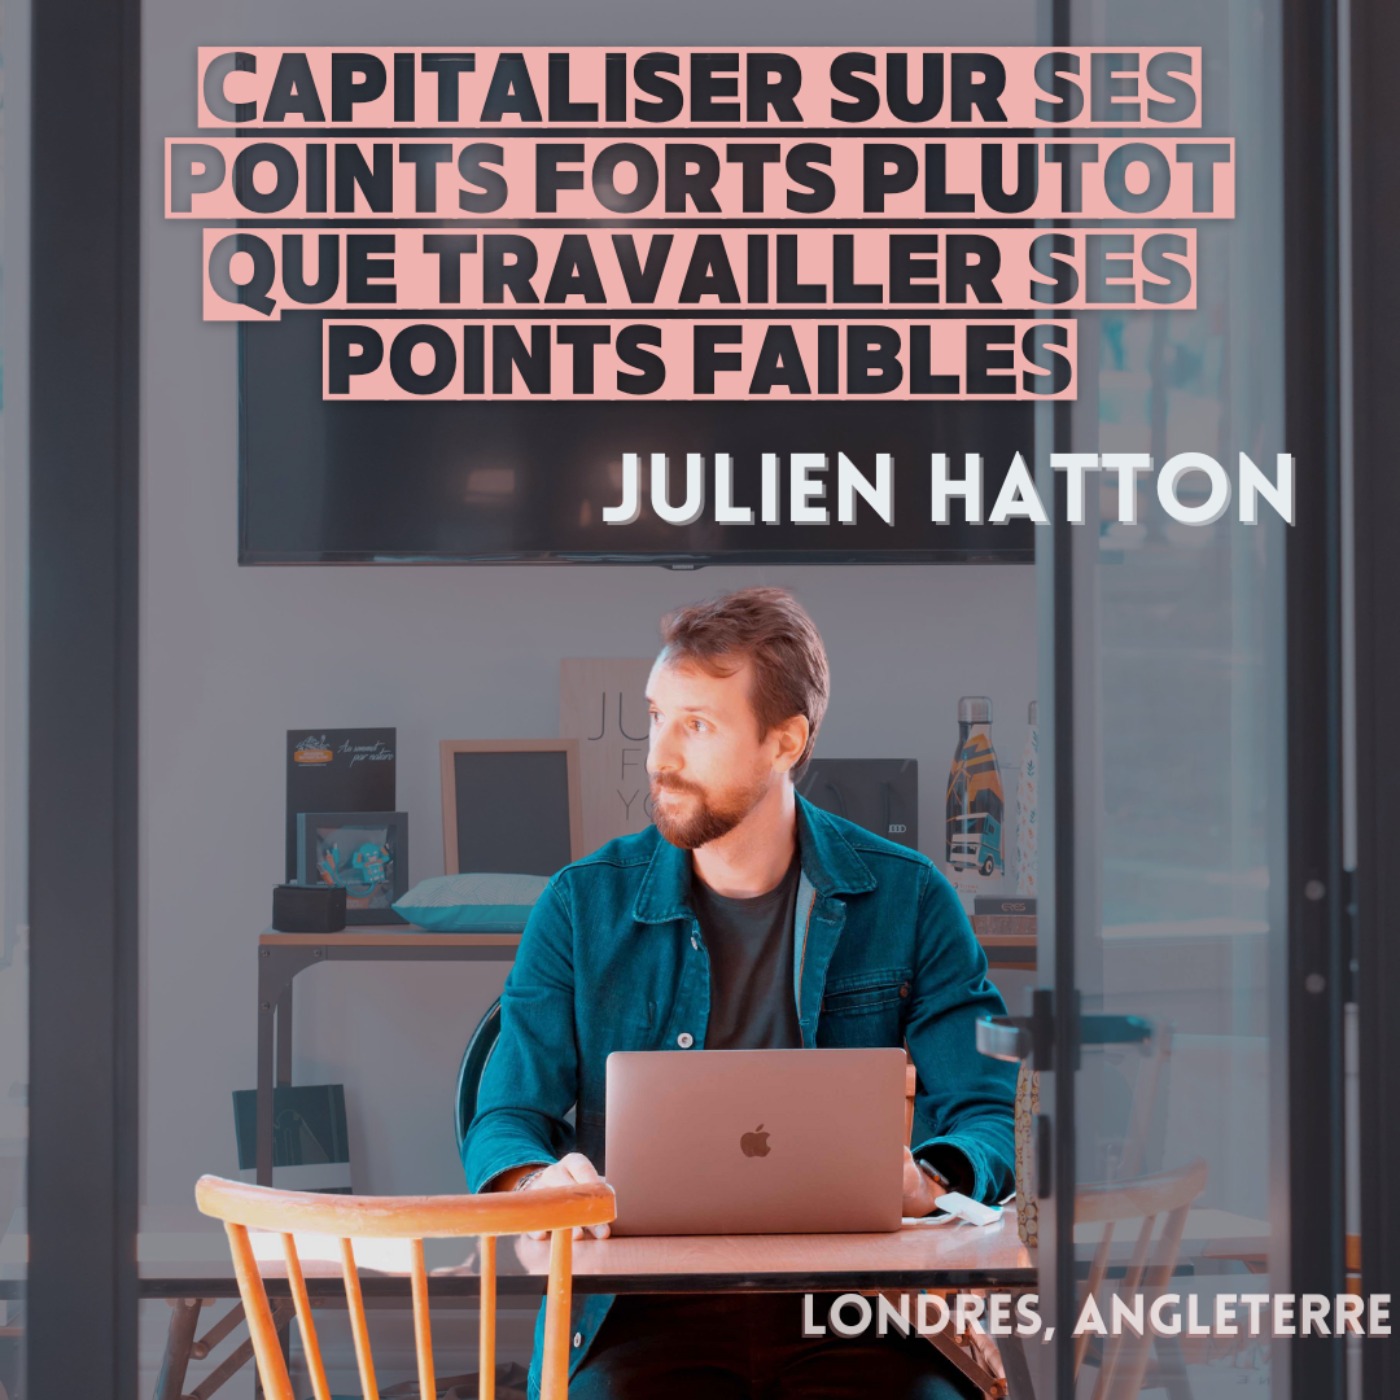 Julien Hatton : Capitaliser sur ses points forts plutôt que travailler ses points faibles